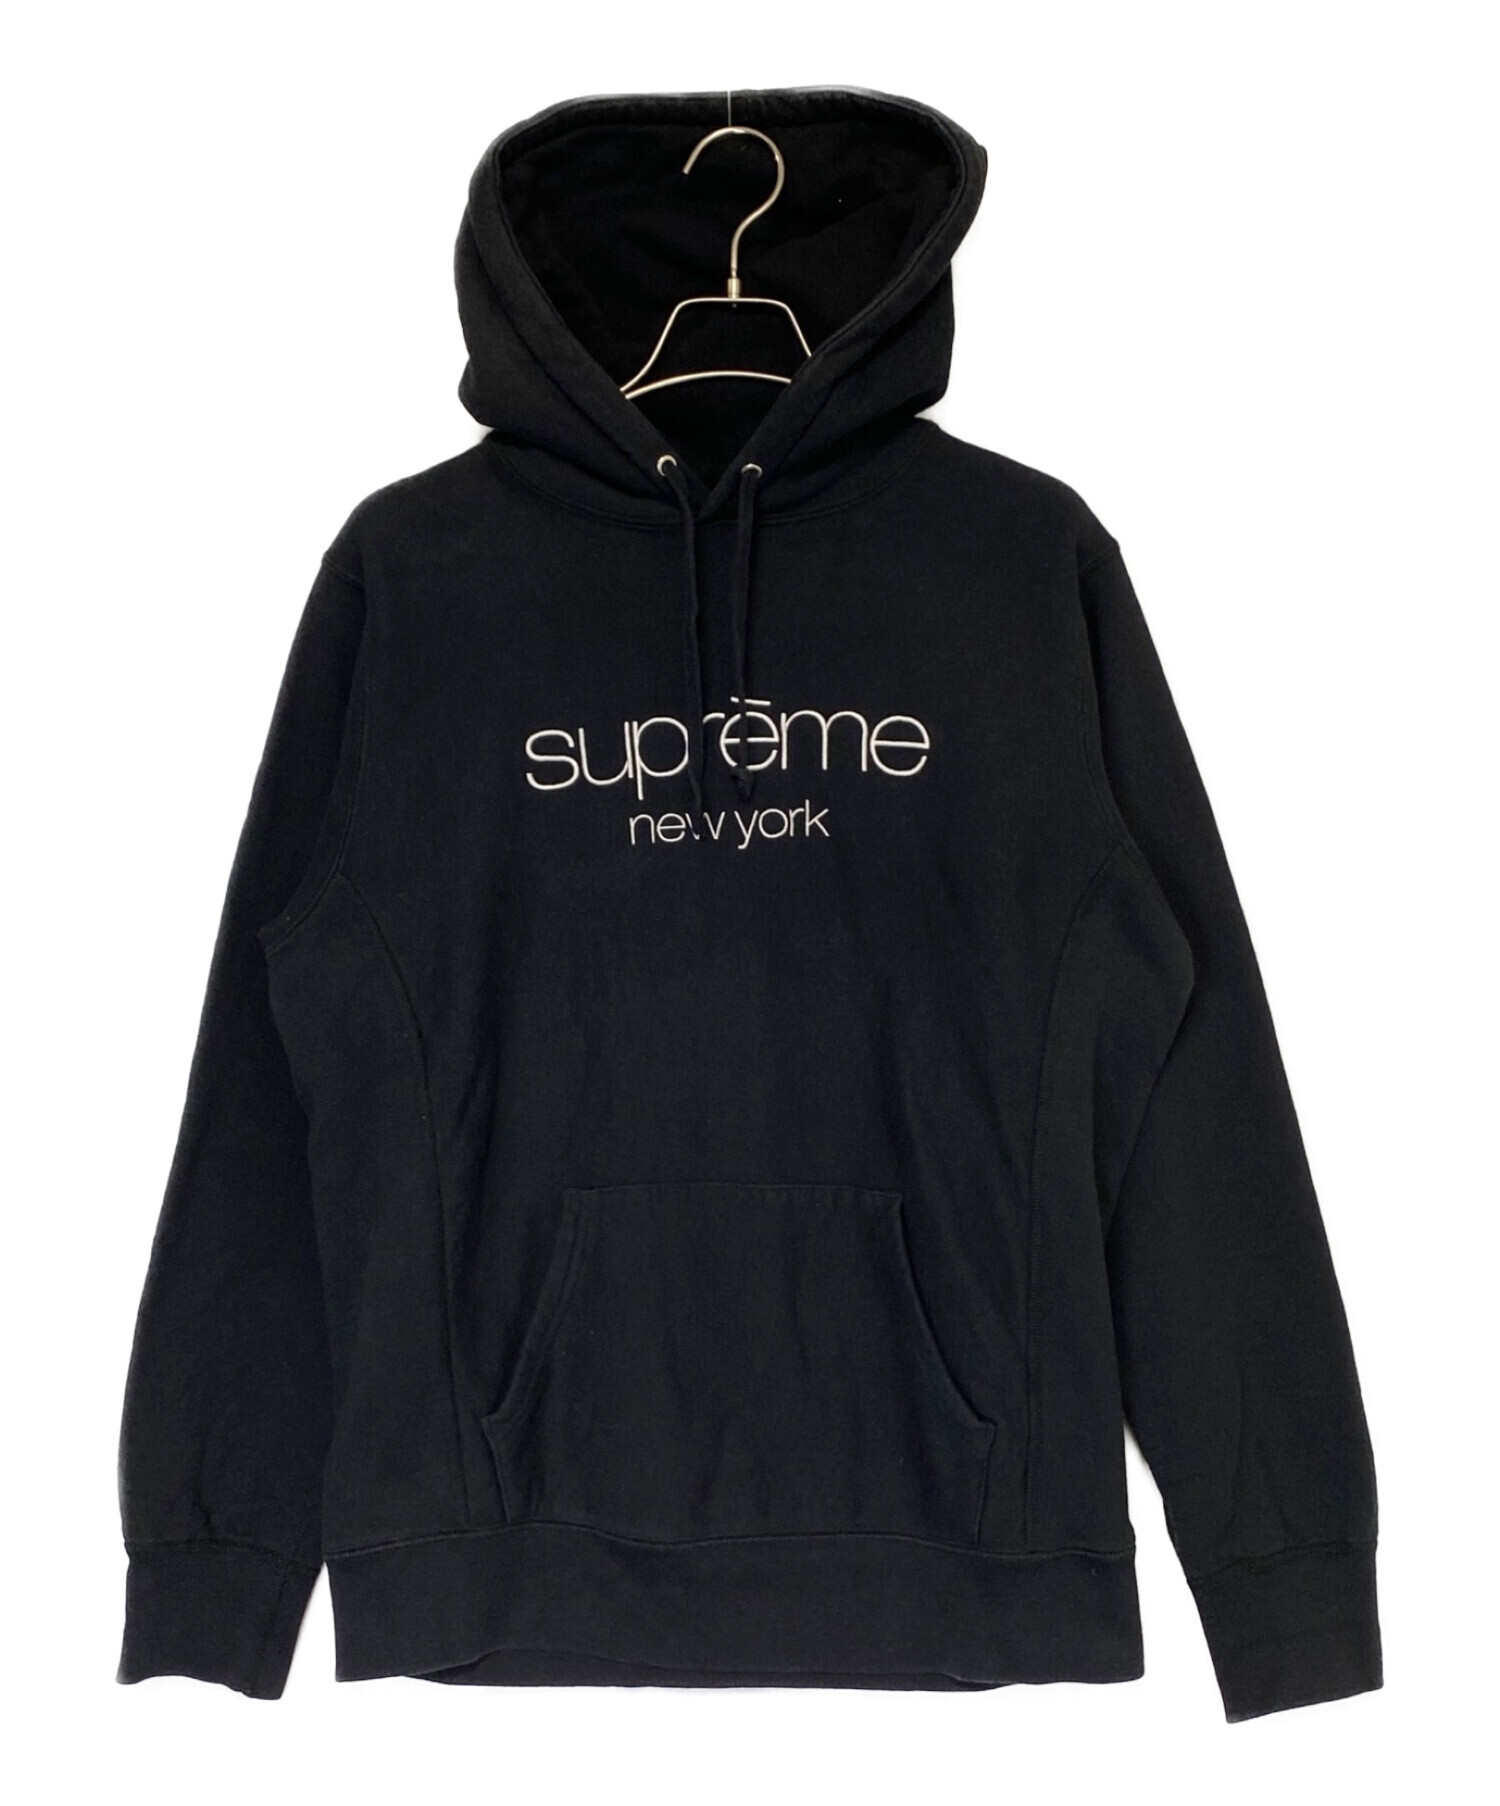 SUPREME (シュプリーム) Multi Color Classic Logo Hooded Sweatshirt ブラック サイズ:M